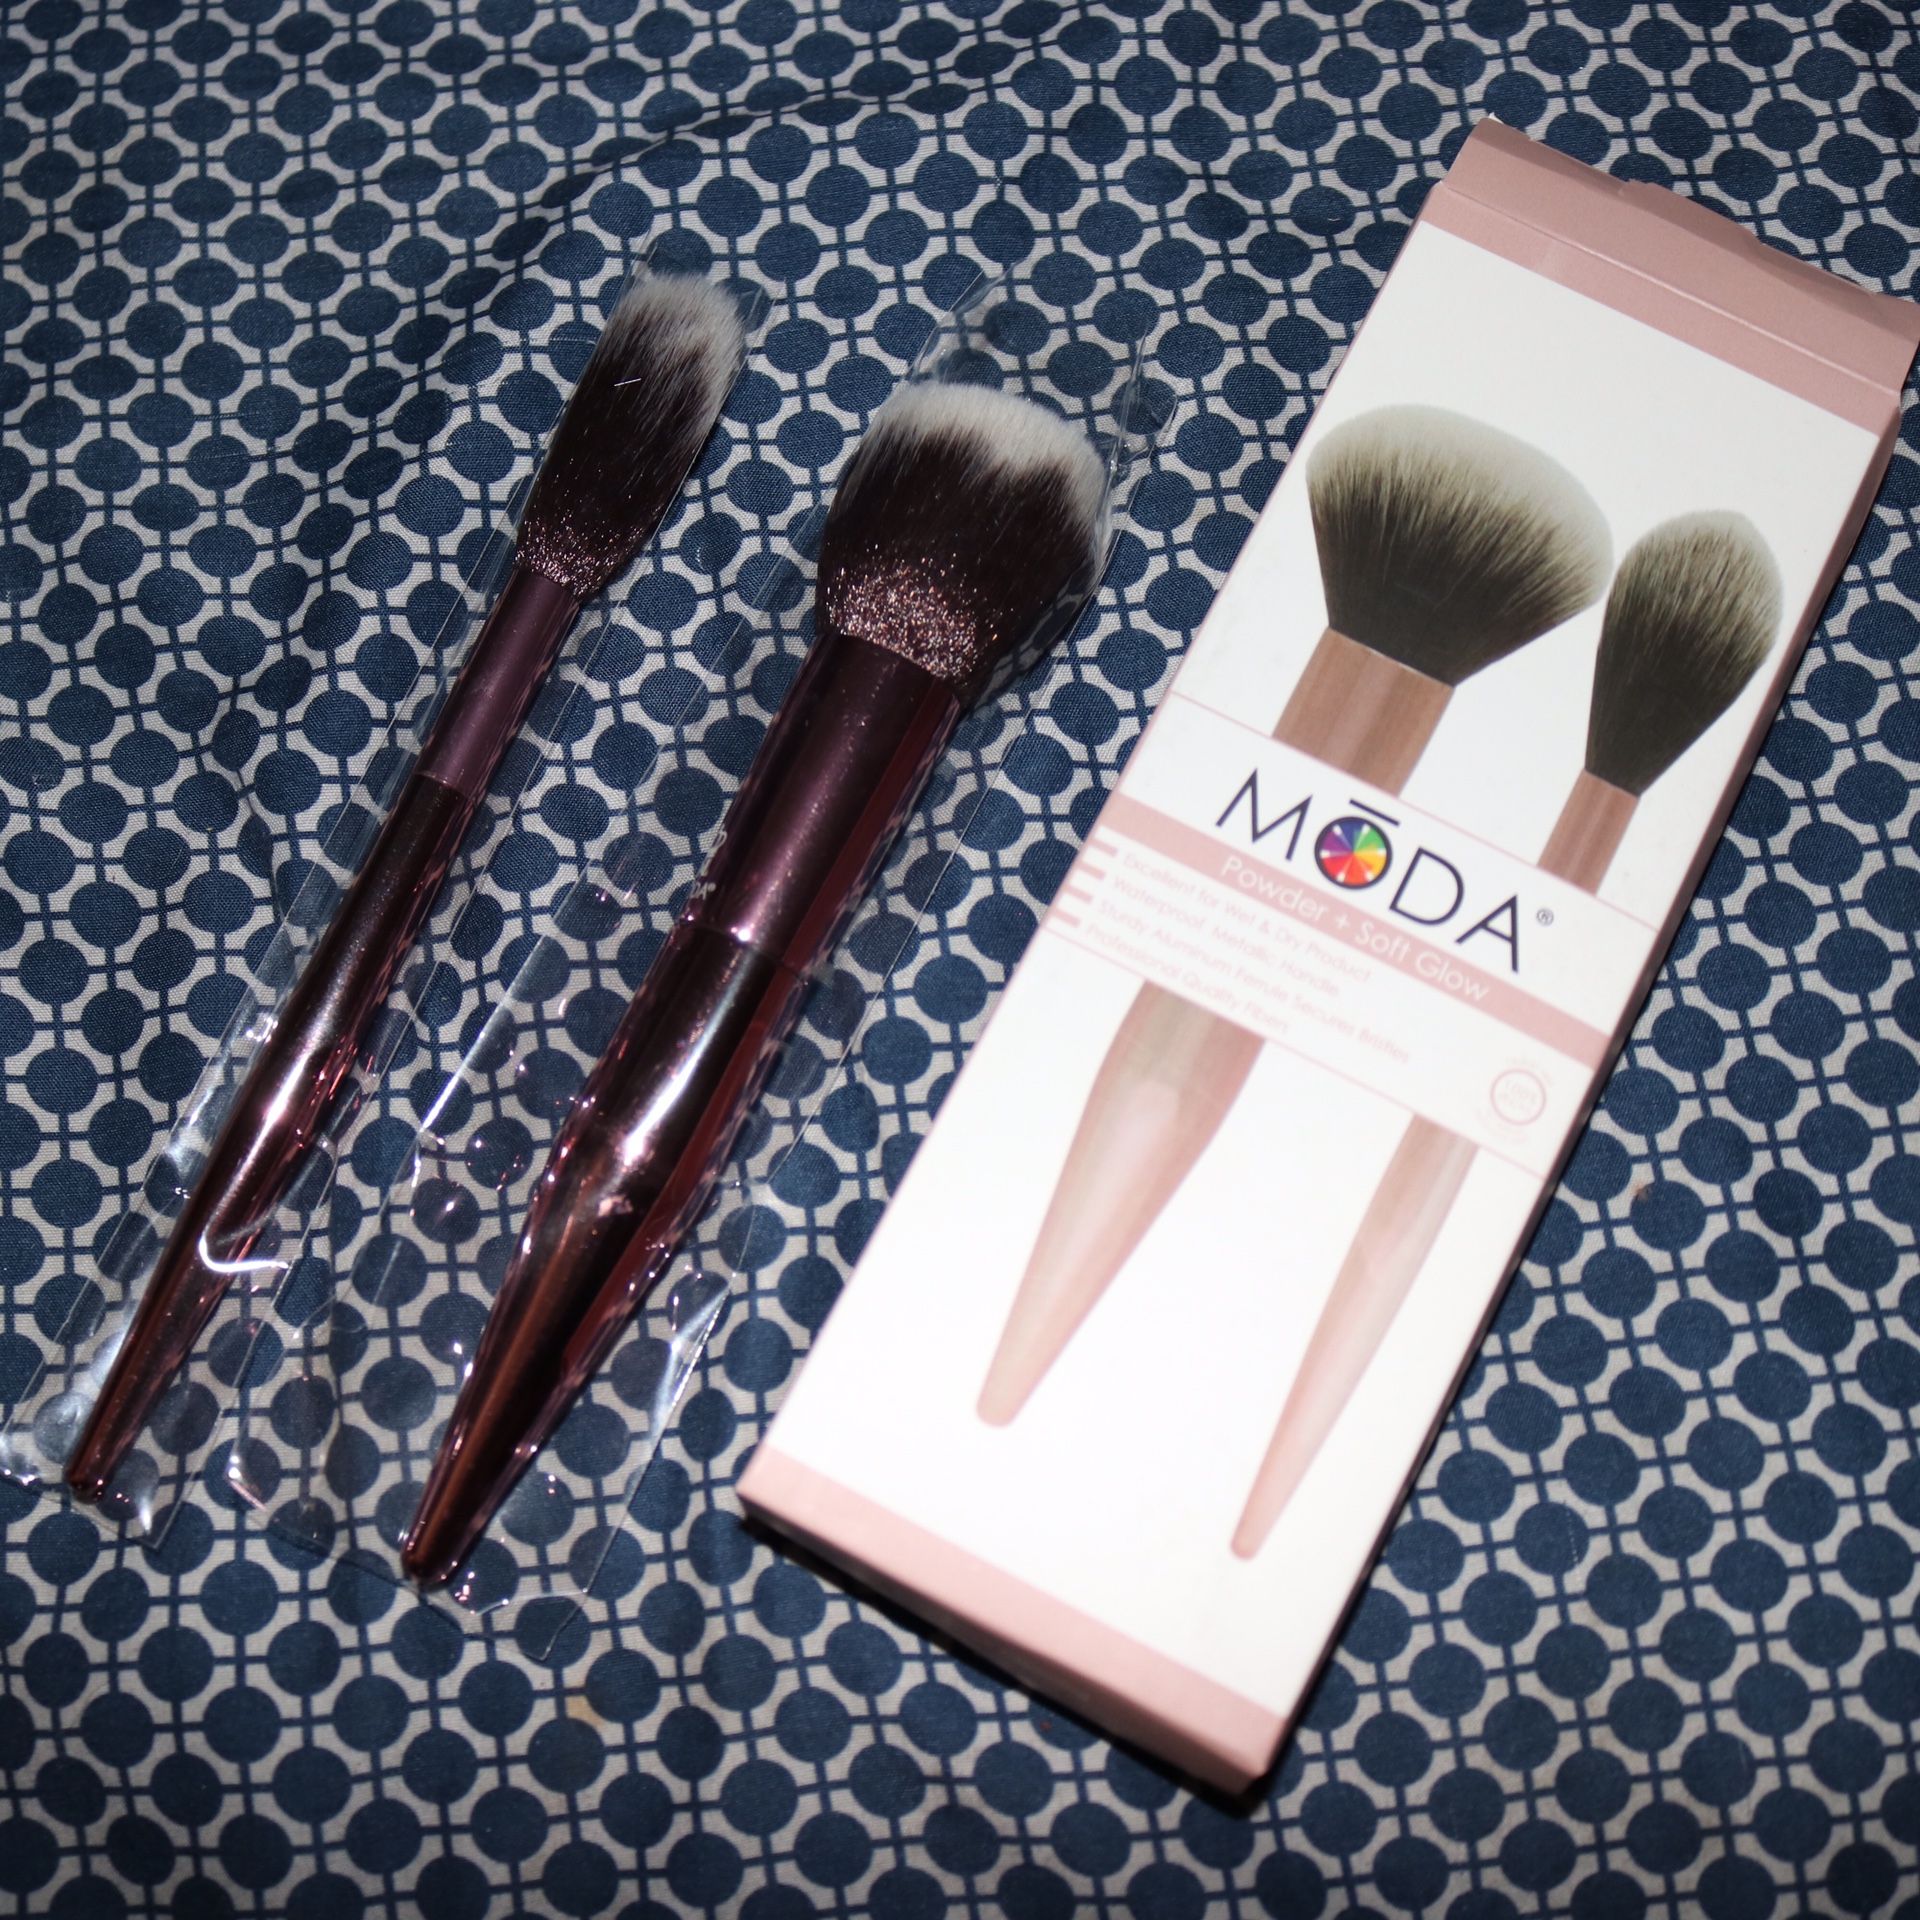 MODA Makeup Brushes Duo